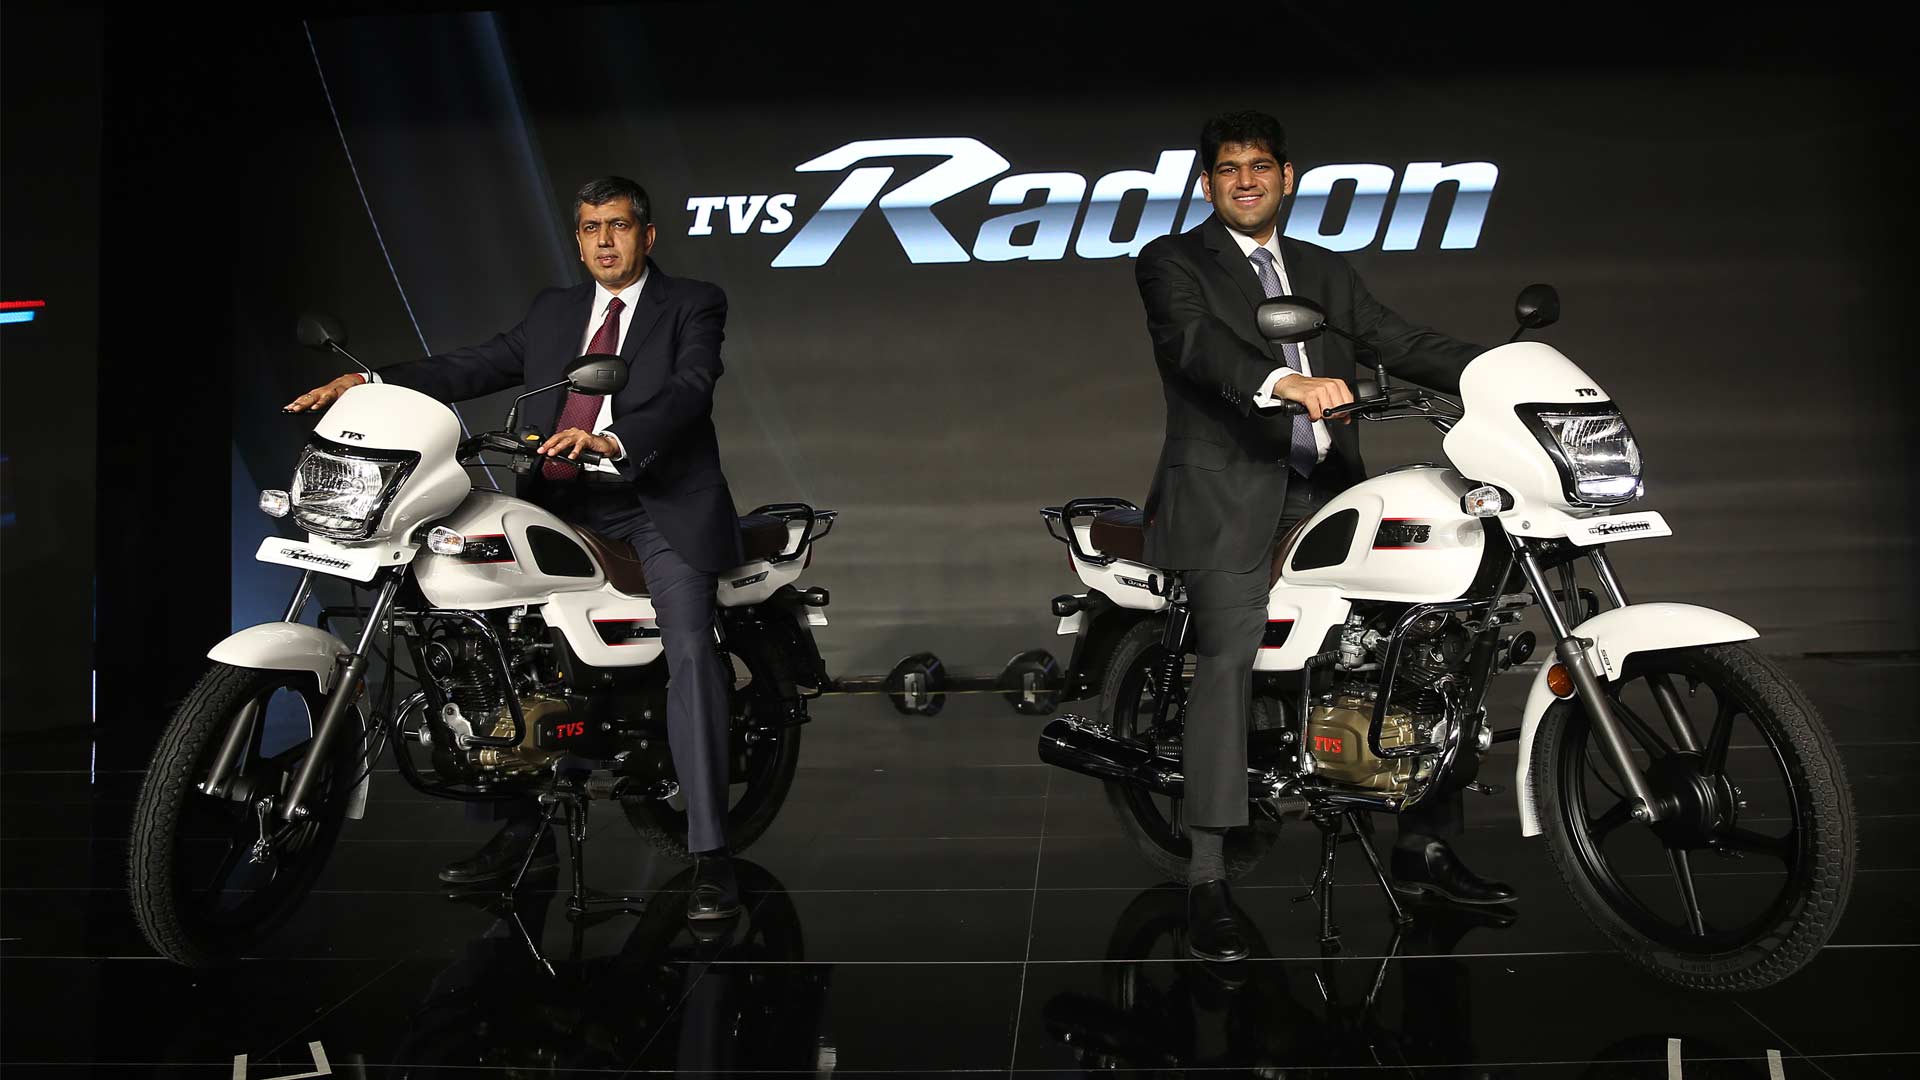 TVS-Radeon-India-launch